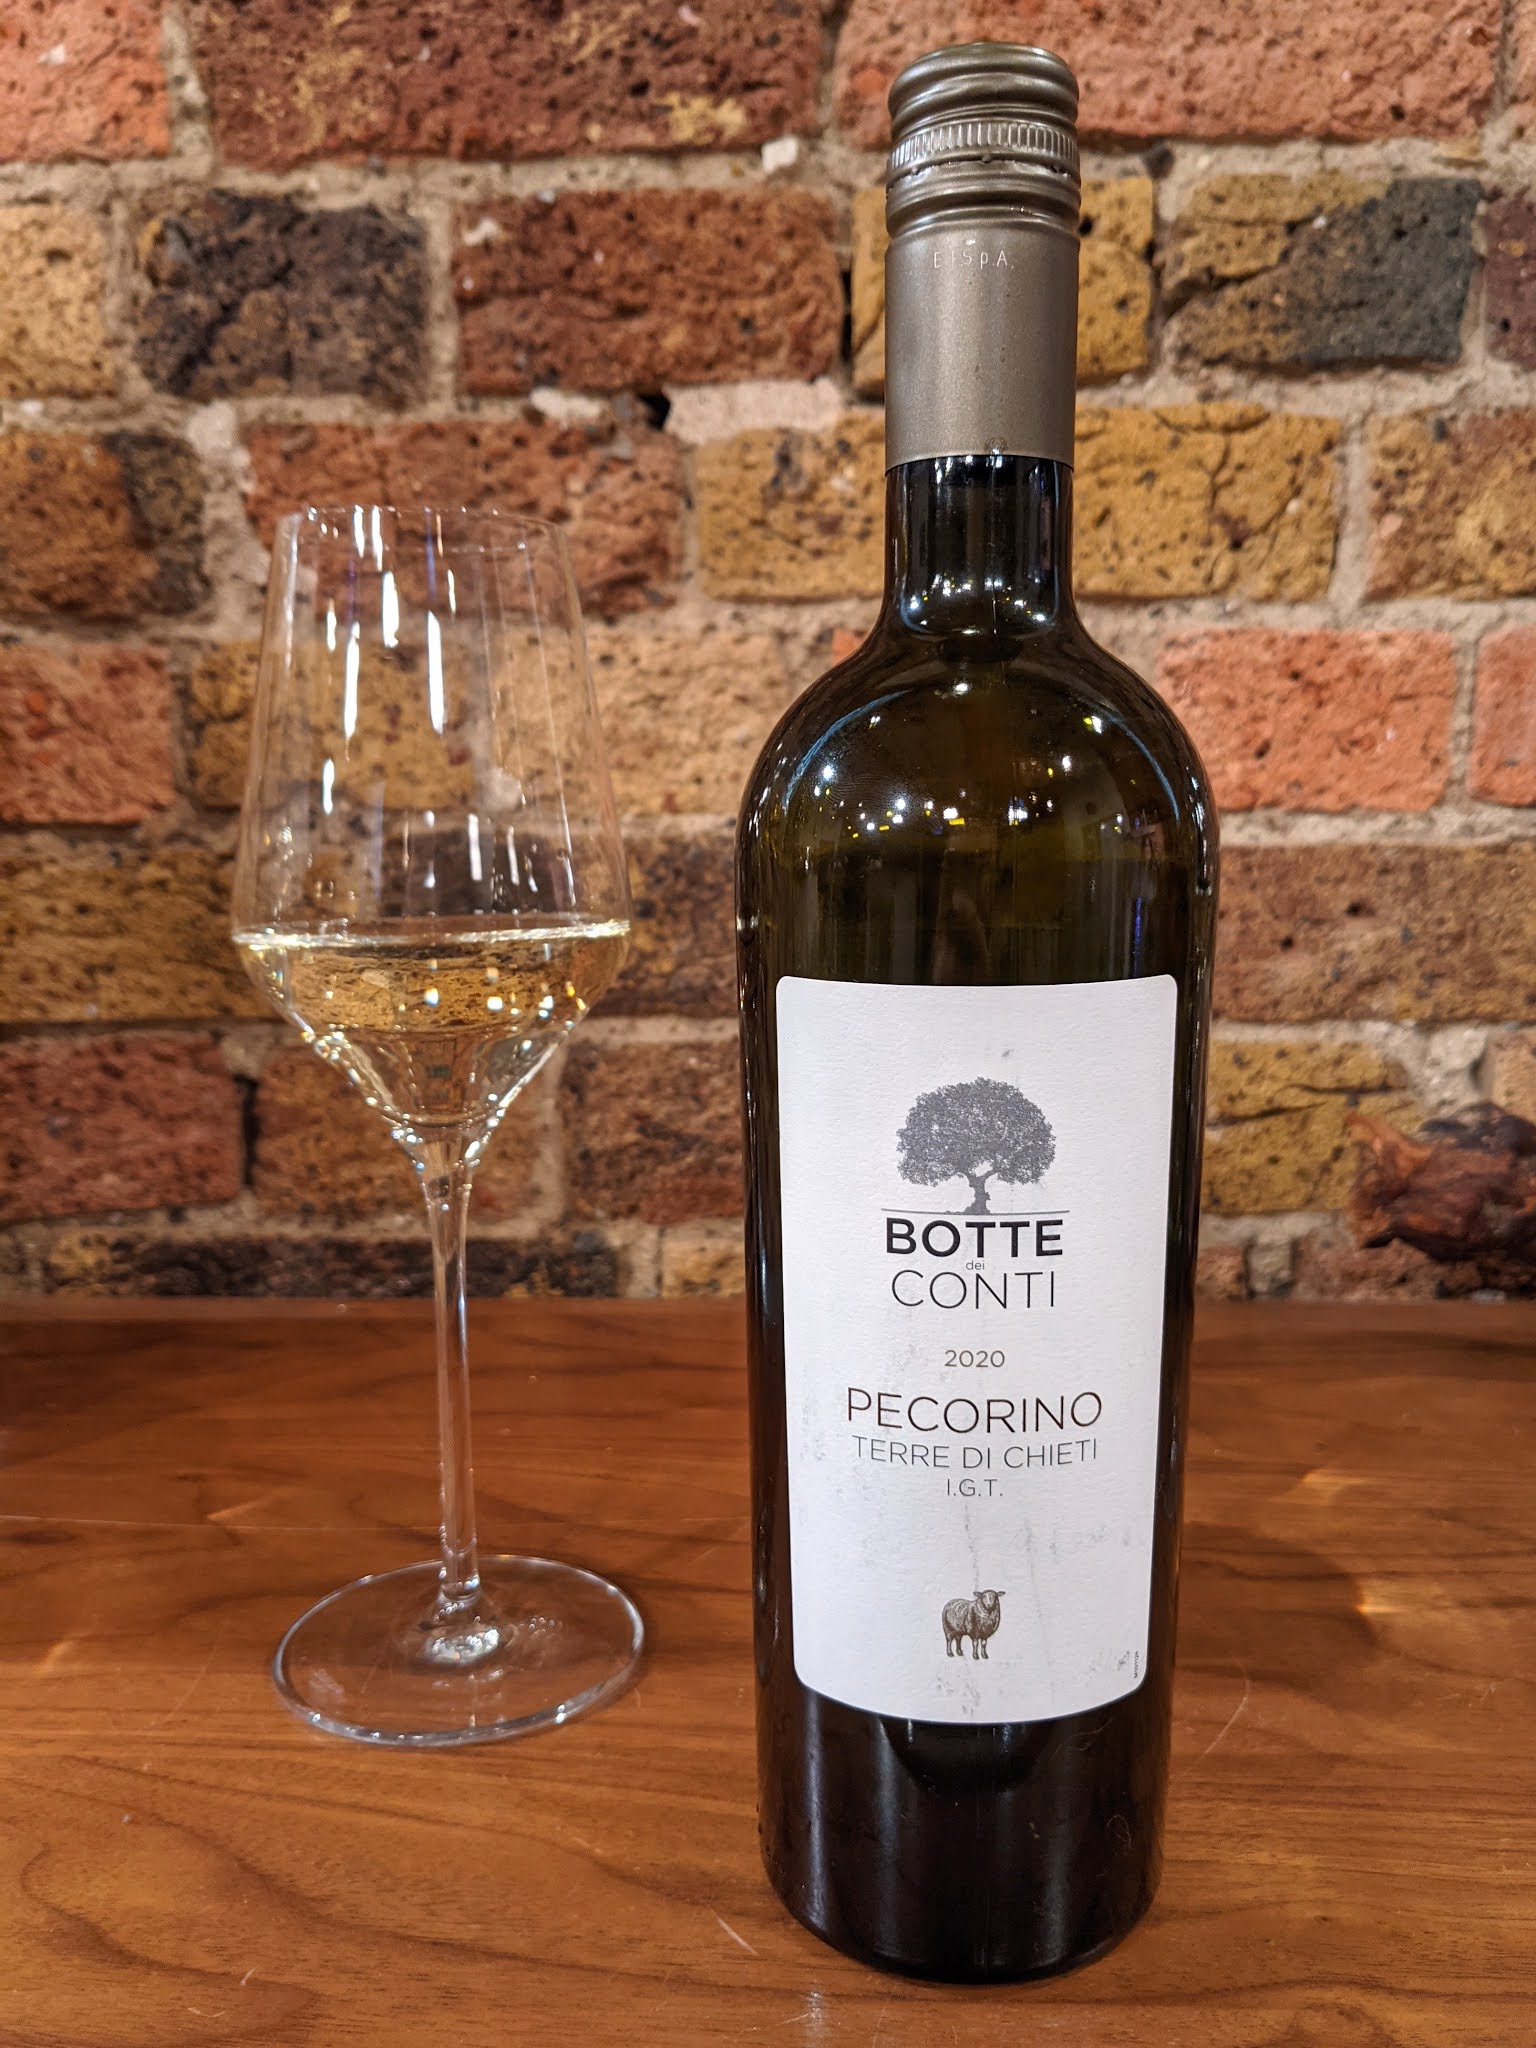 The Cambridge Wine Blogger: Botte de Conti Pecorino, Terre di Chieti